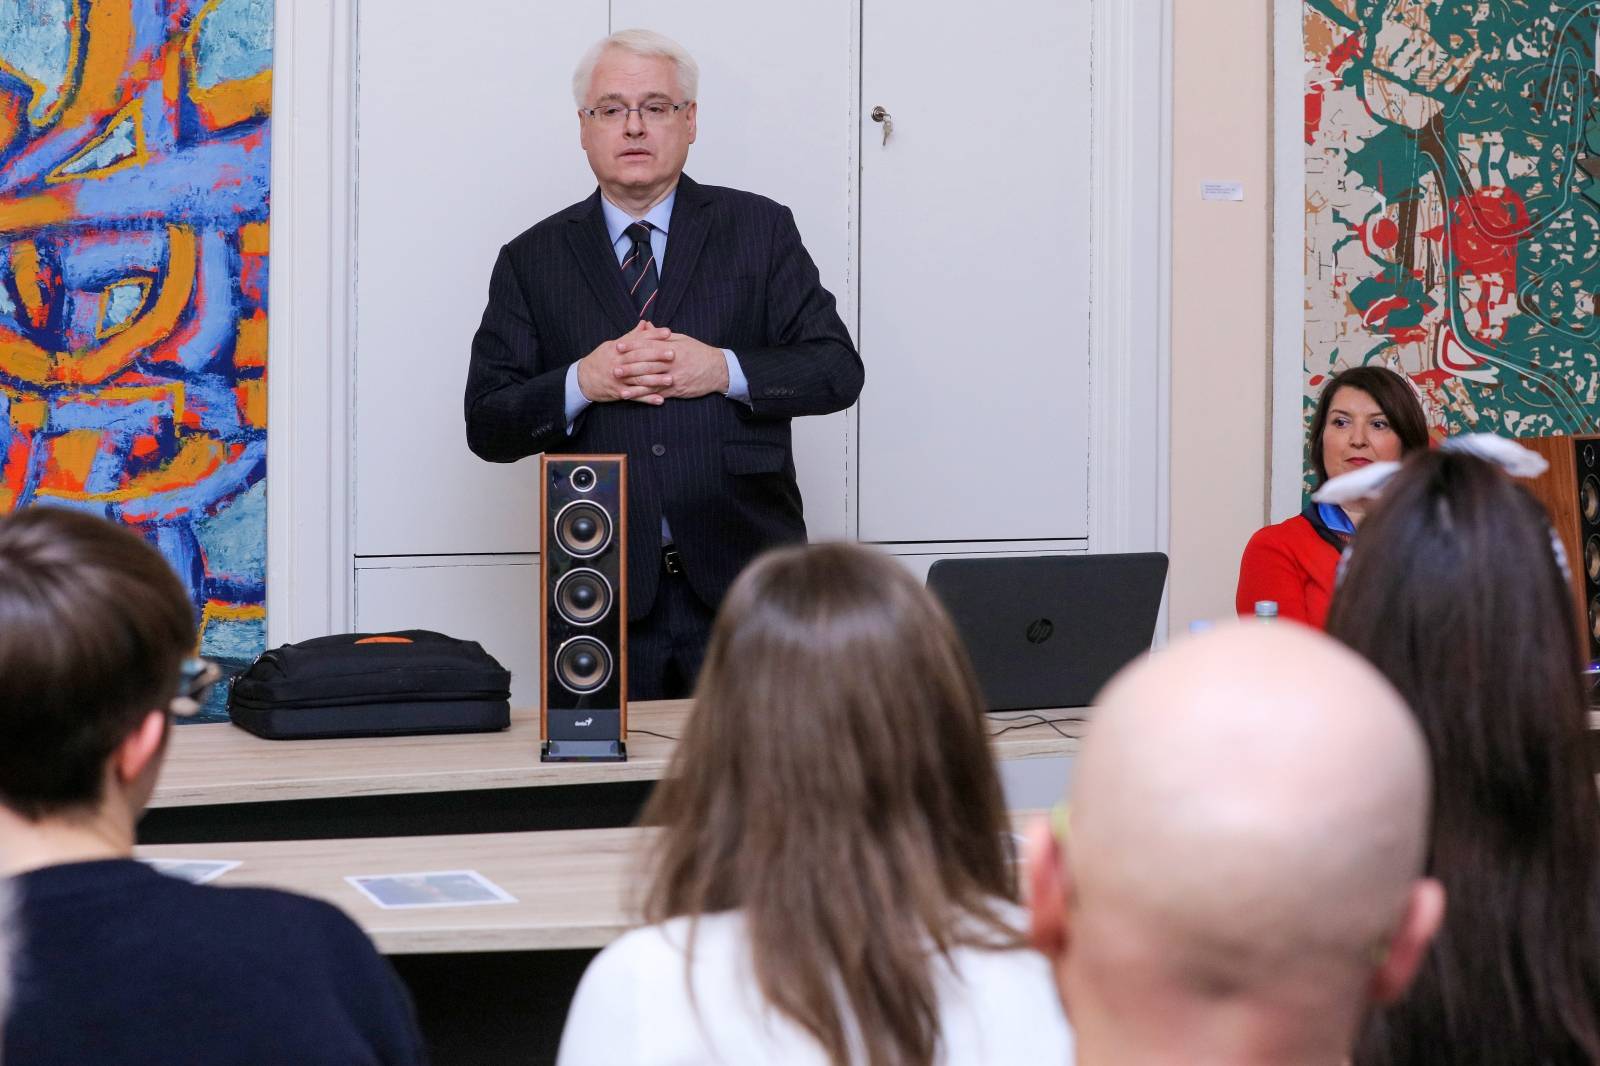 Osijek: Predavanje Ive Josipovića na temu "Politika i glazba"